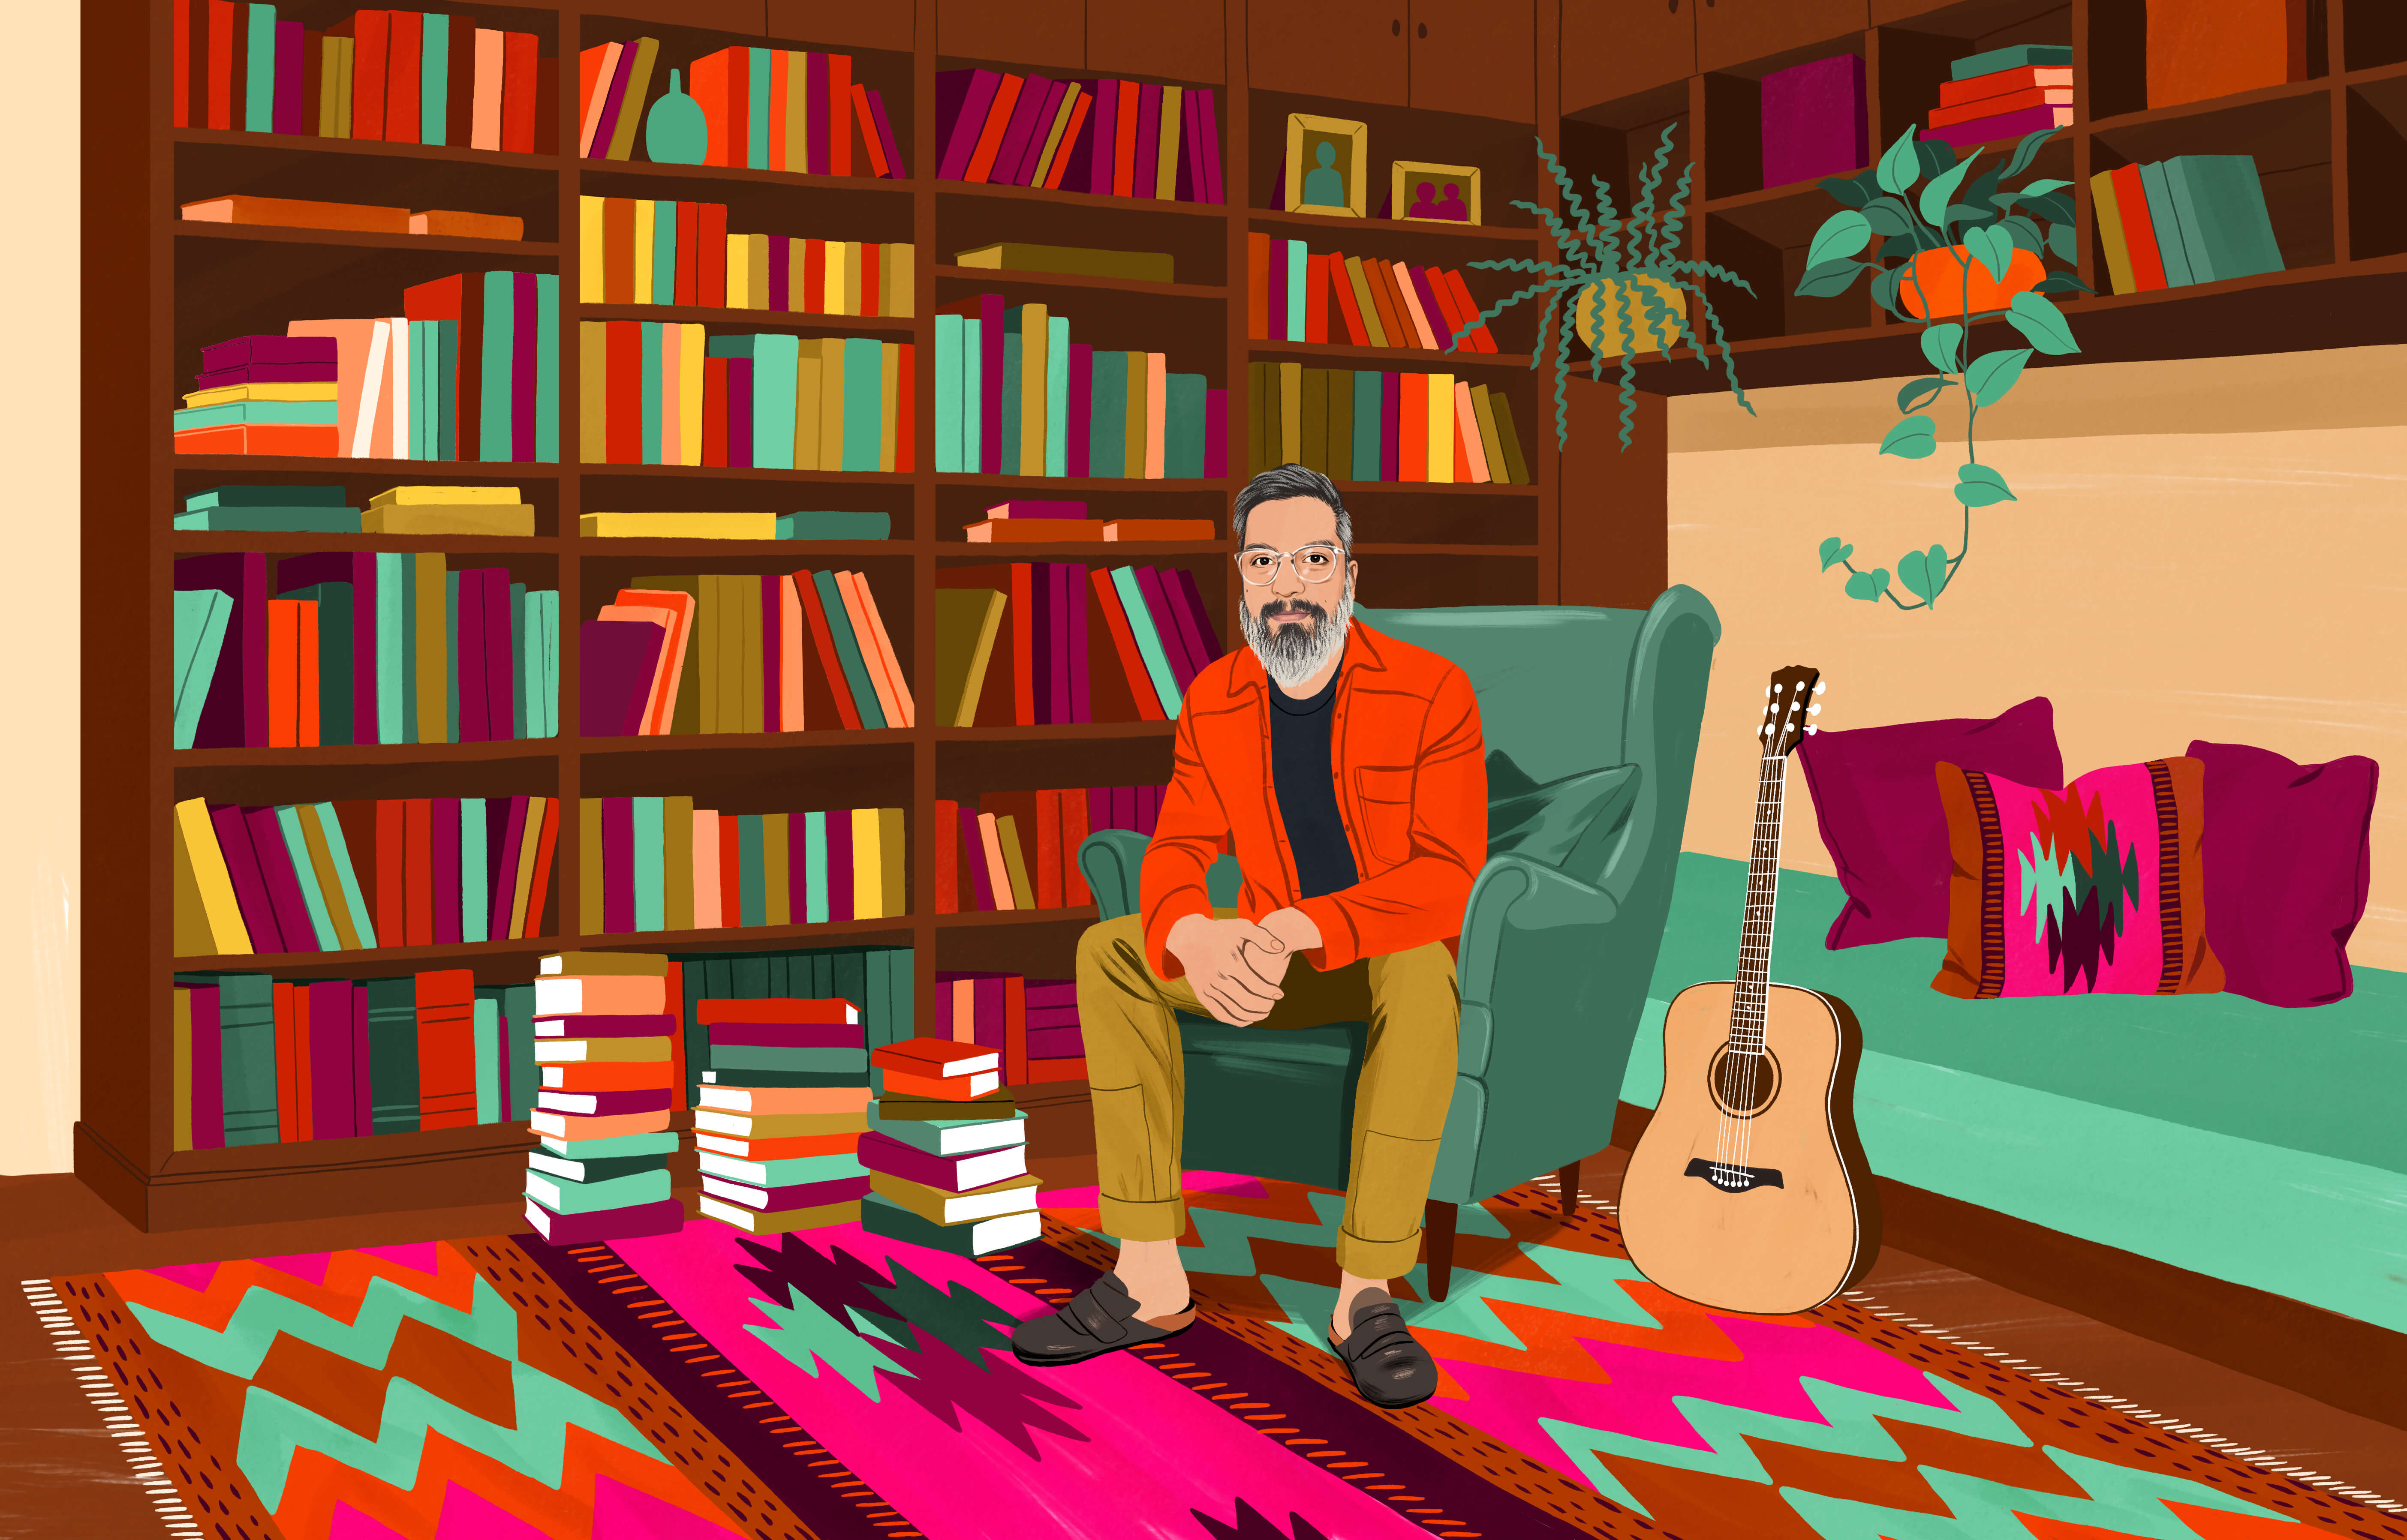 JP sedící v ušáku, obklopený spoustou knih v knihovnách i ve vysokých stozích na podlaze. Na podlaze leží tradiční čilský koberec s barevným vzorem. Na dosah ruky je akustická kytara.